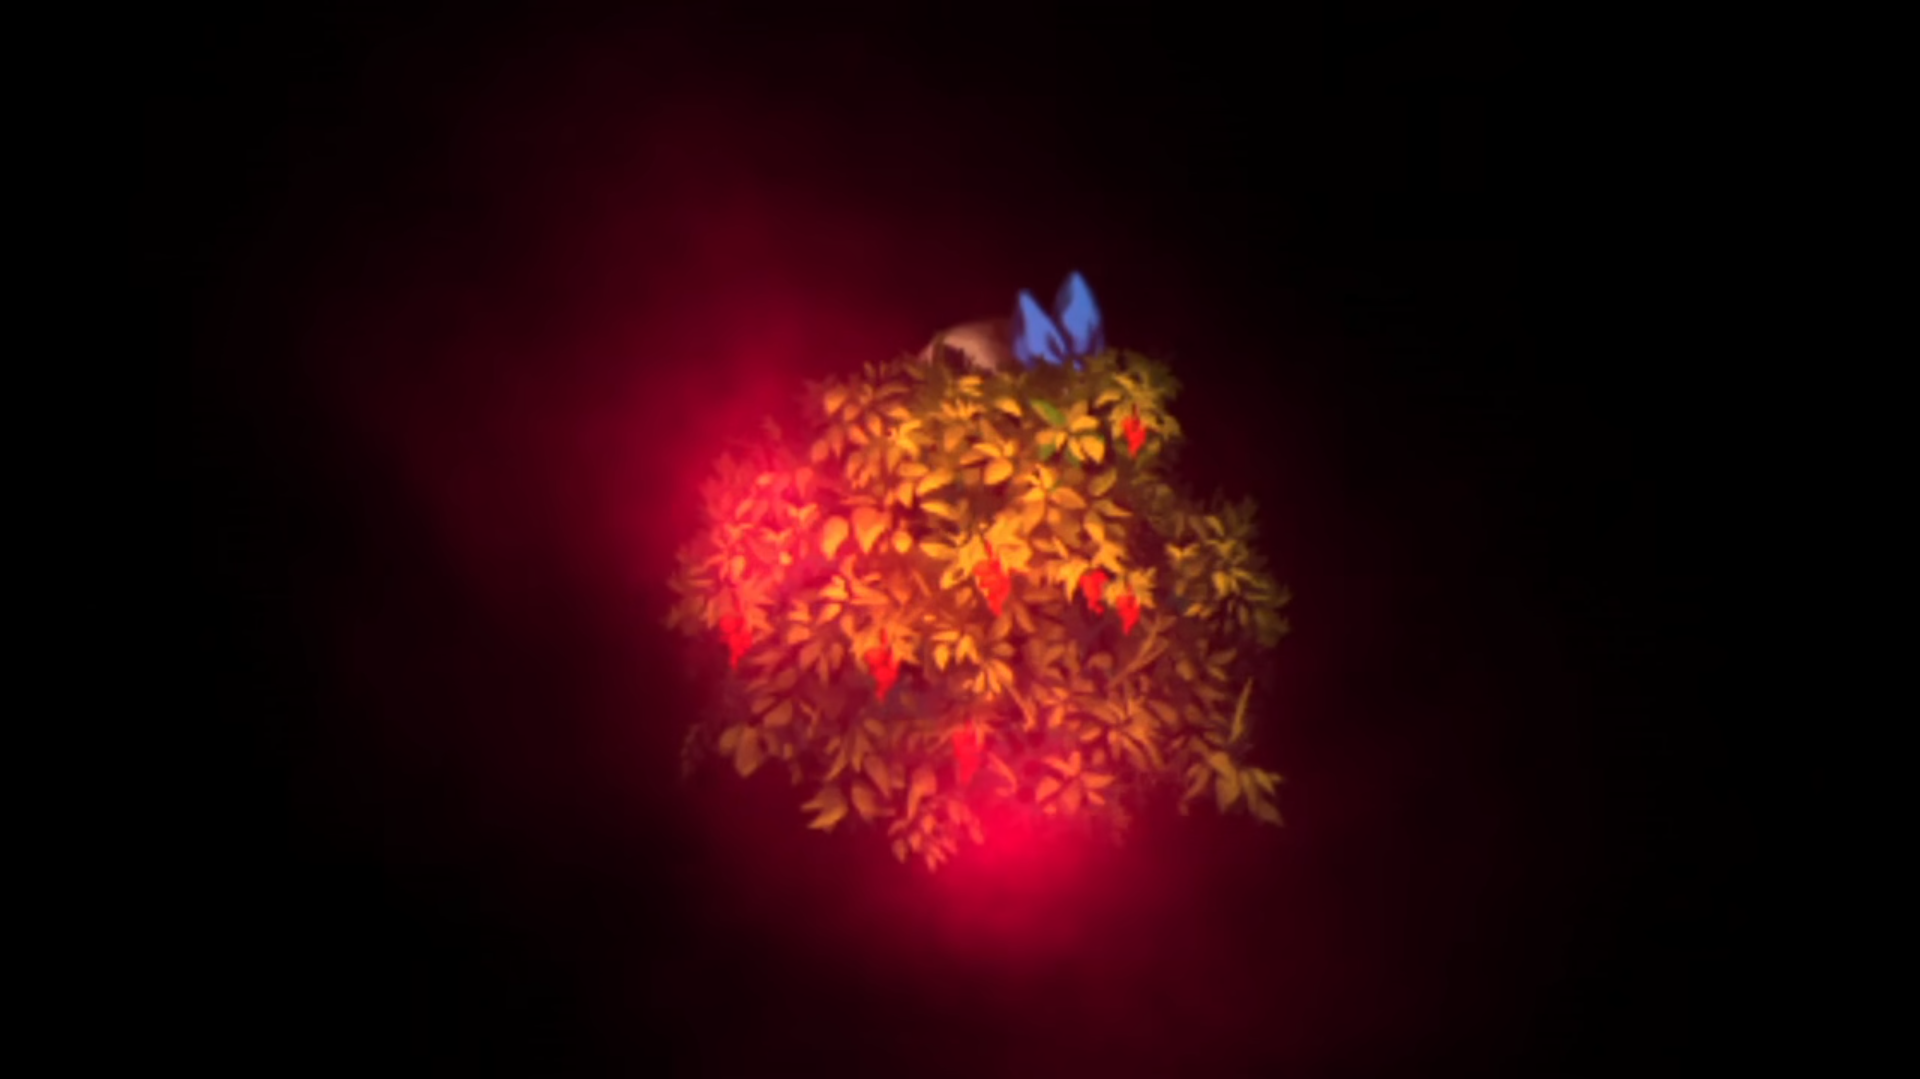 《深夜廻》游戏截图画面，蓝色蝴蝶结就是躲在草丛中的玩家的头饰，红色雾气是鬼怪的大概方位